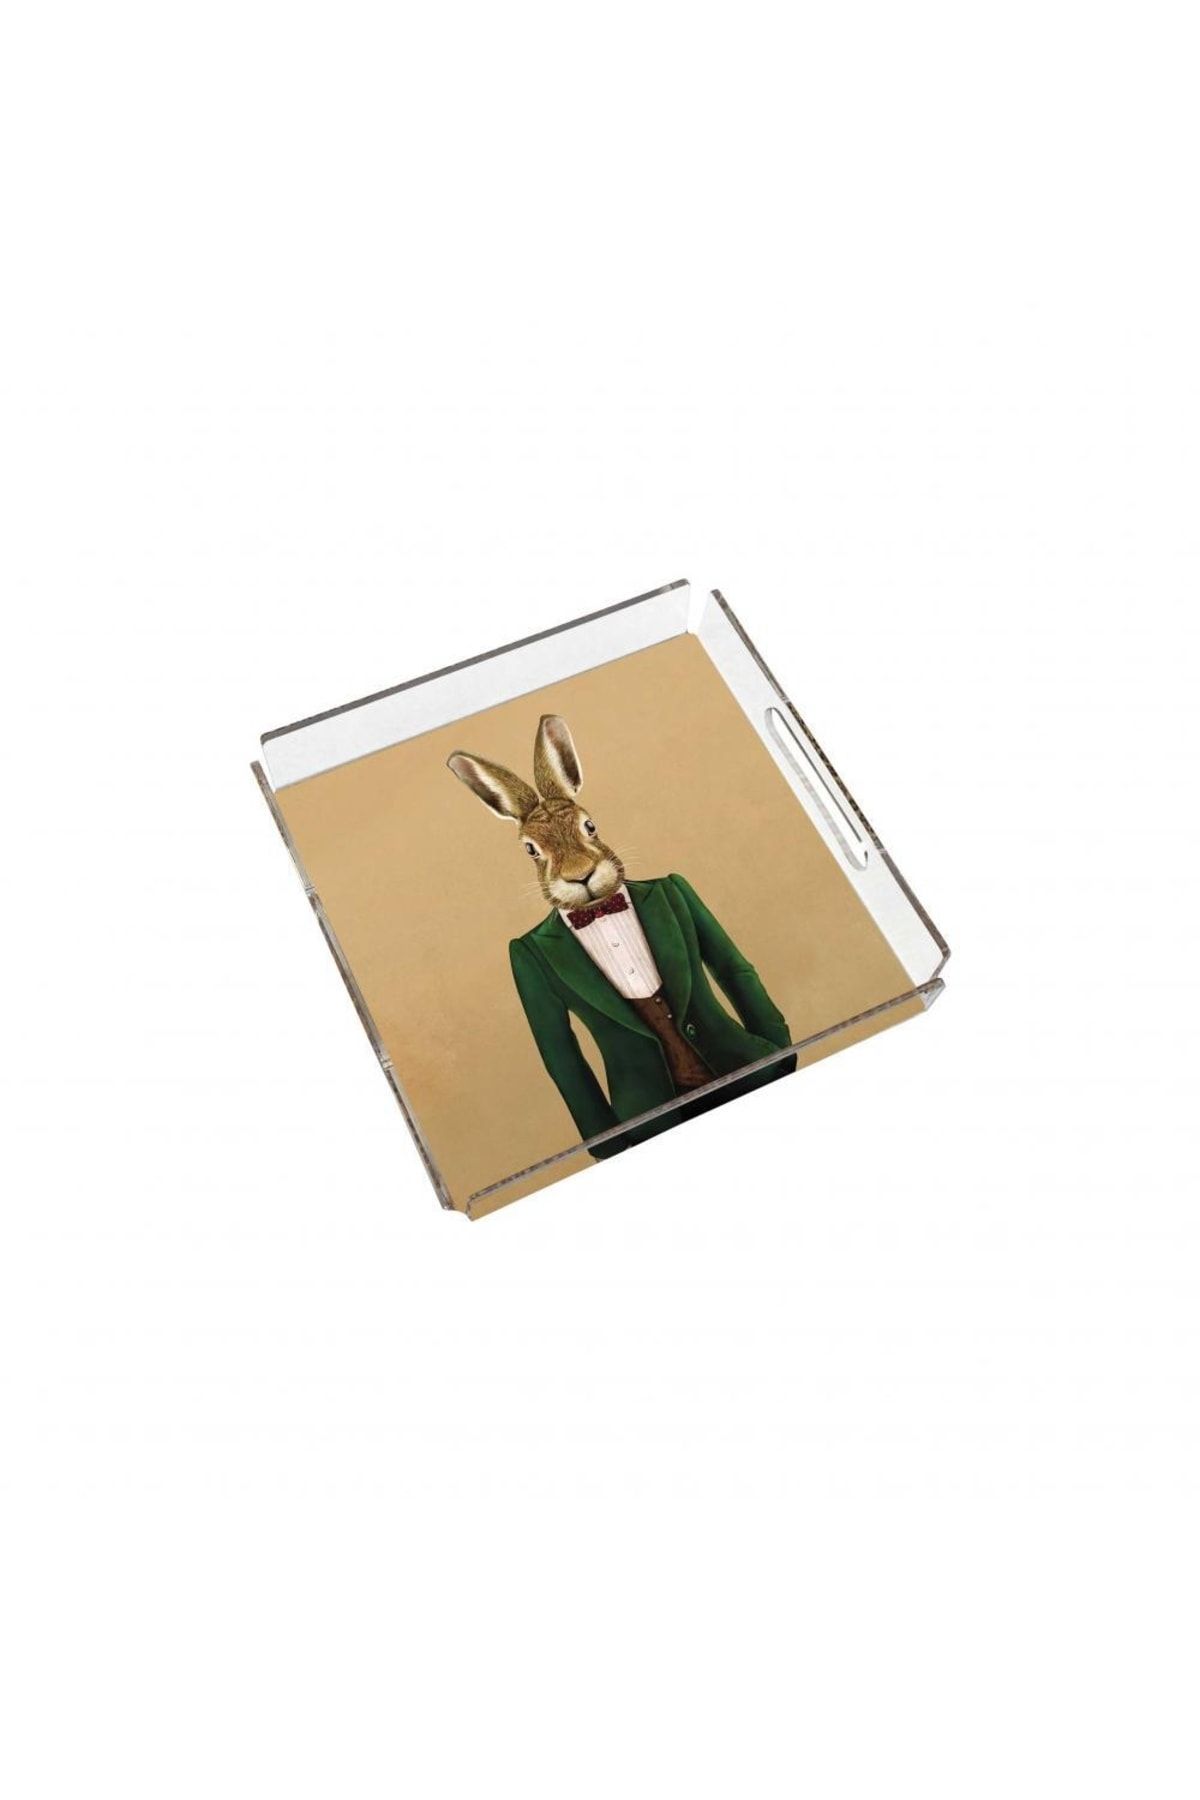 Adawall Mr. Rabbit Pleksi Tepsi (25x25cm)